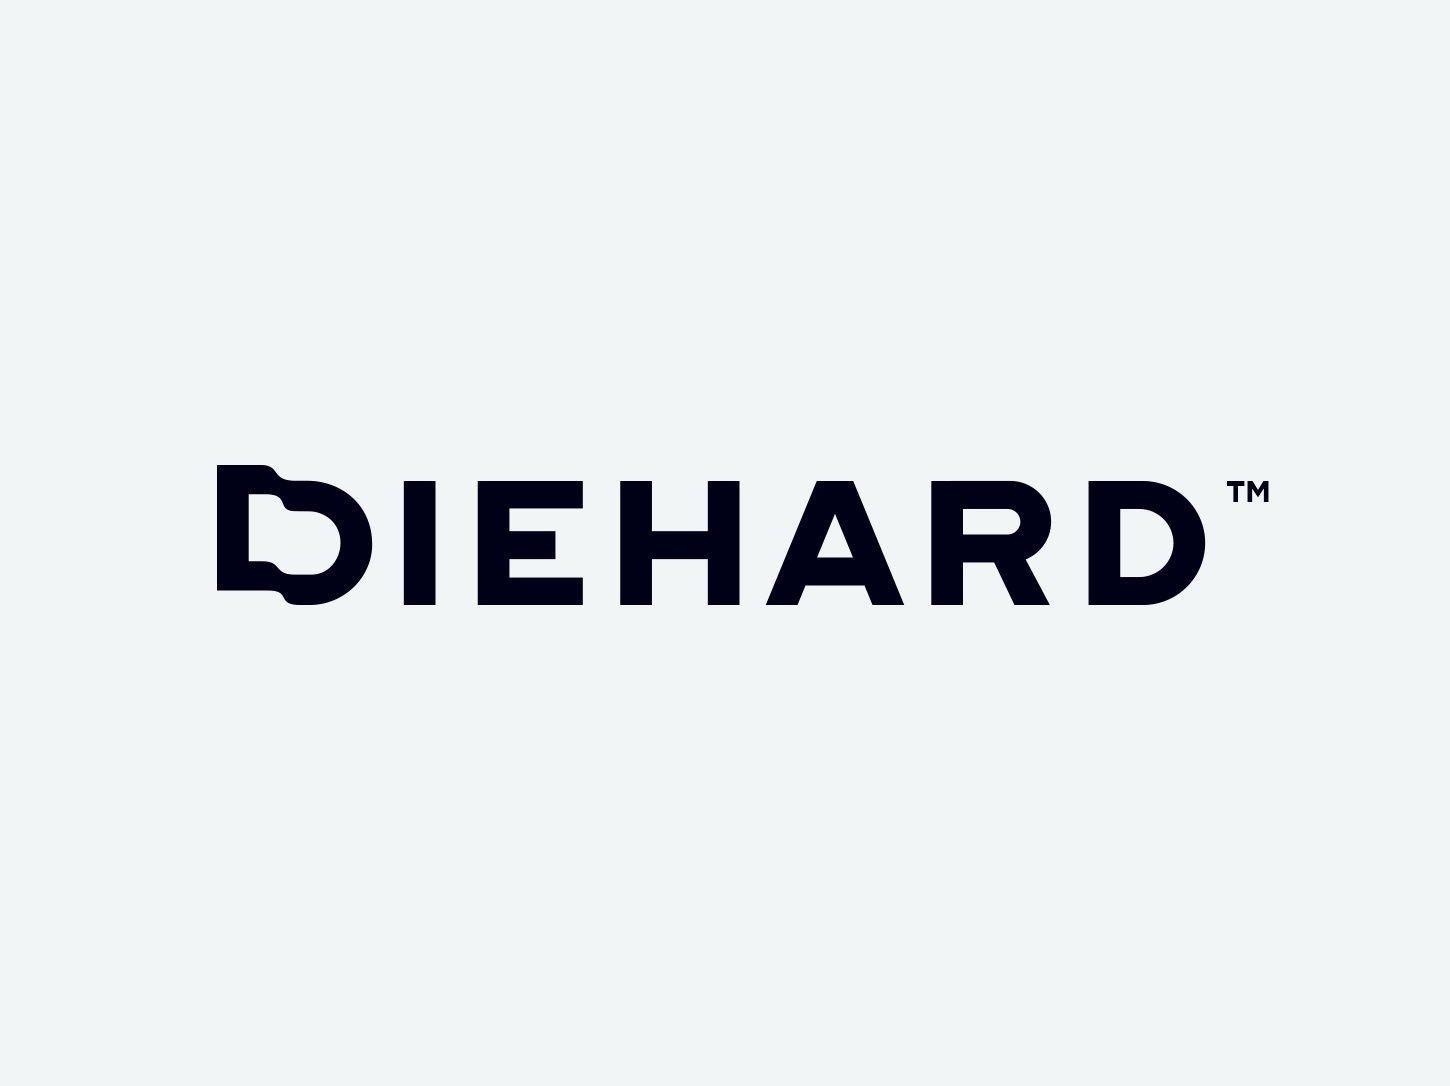 Diehard Logo - Diehard by Paul von Excite on Dribbble